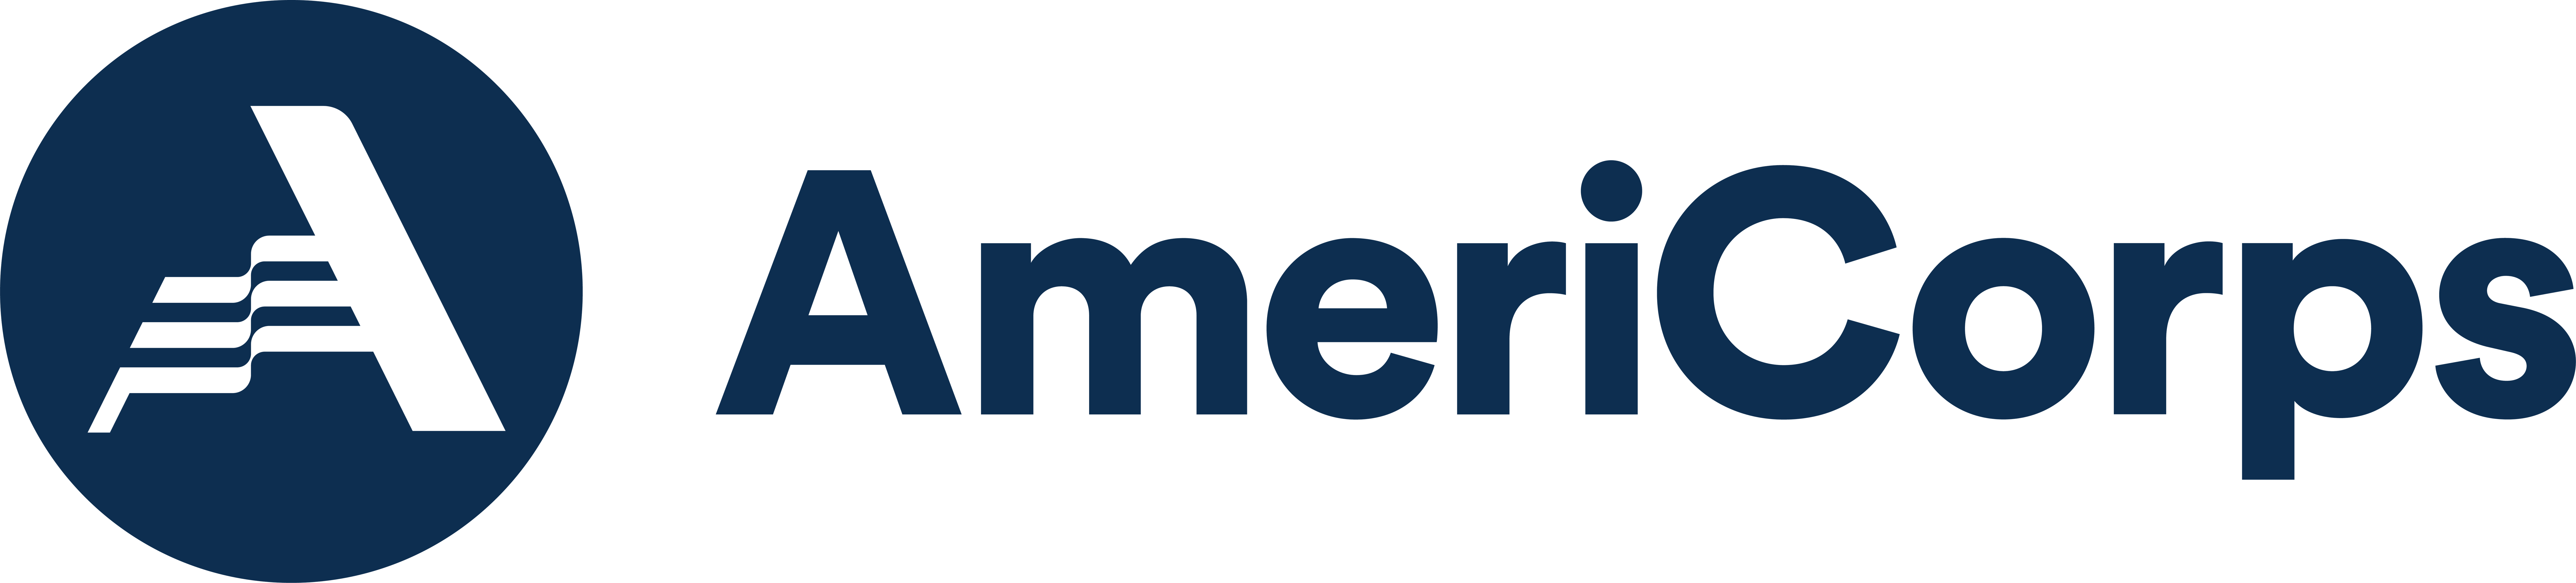 AmeriCorps_Main-logo_Navy